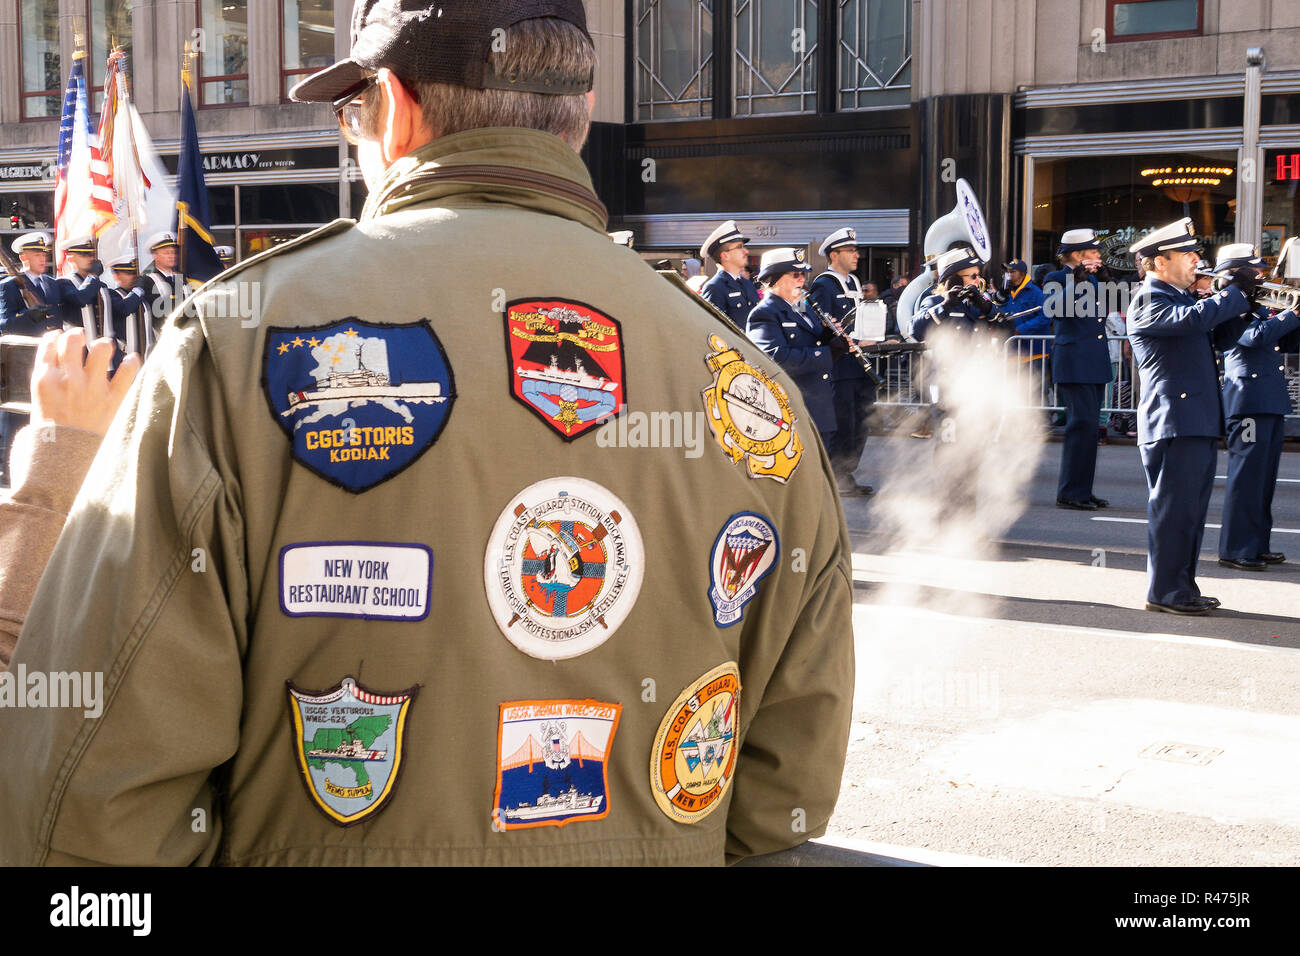 2018 Jährliche Veterans Day Parade auf der Fifth Avenue, New York, USA Stockfoto